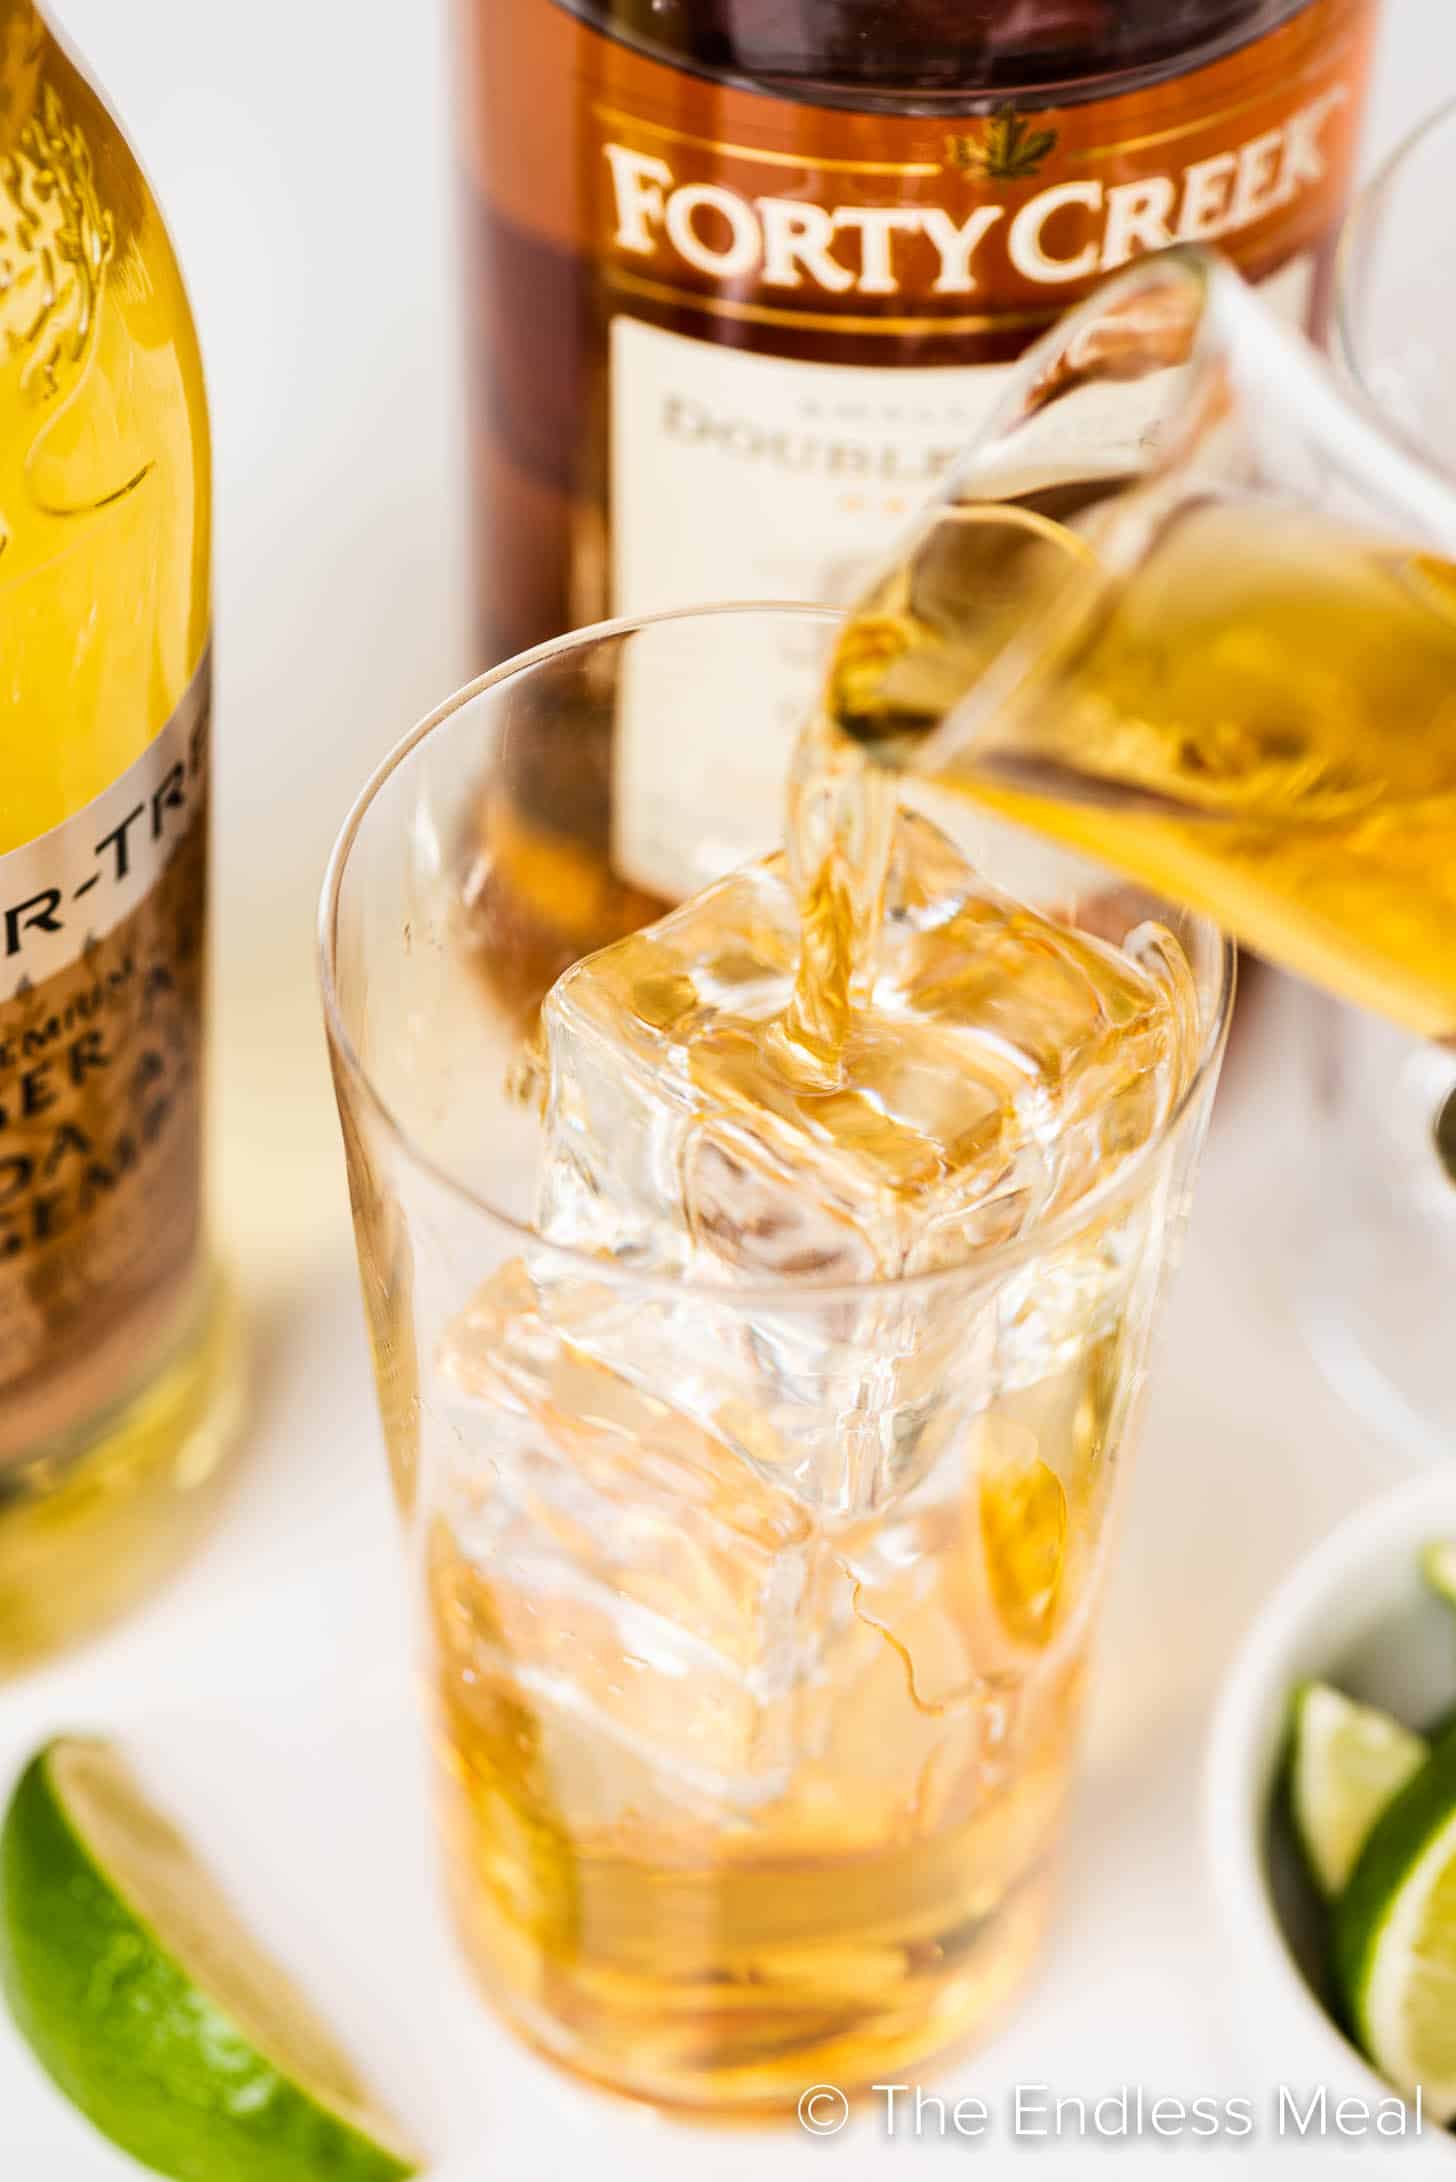 whisky che viene versato in un bicchiere